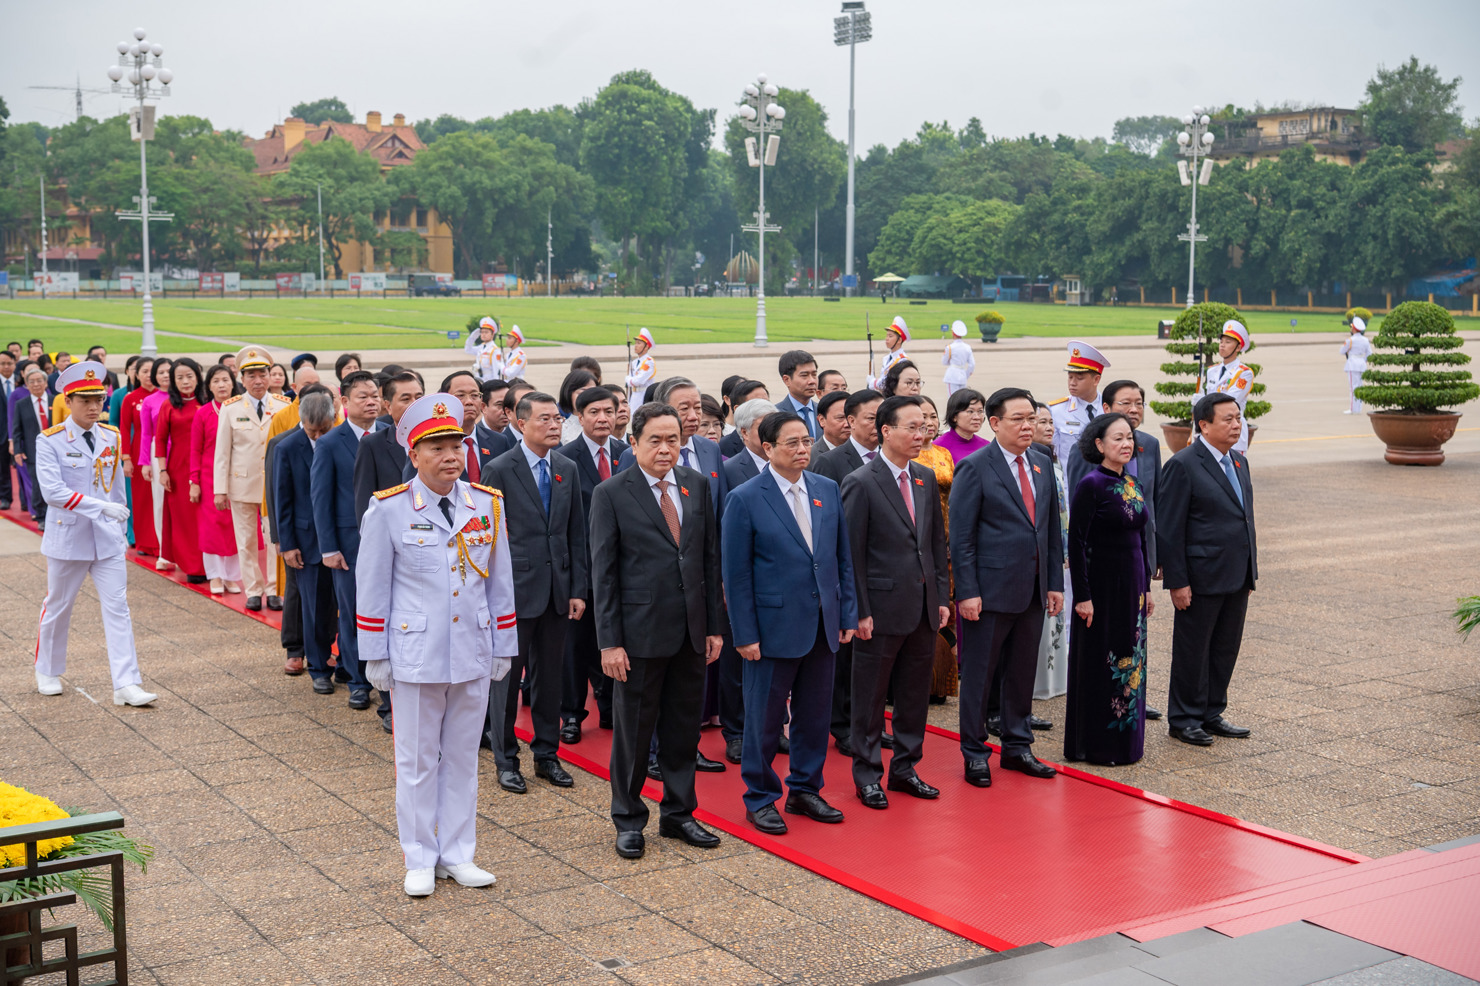 Lãnh đạo Đảng, Nhà nước cùng các đại biểu Quốc hội kính cẩn tỏ lòng biết ơn, lòng thành kính tưởng nhớ công lao to lớn của Chủ tịch Hồ Chí Minh